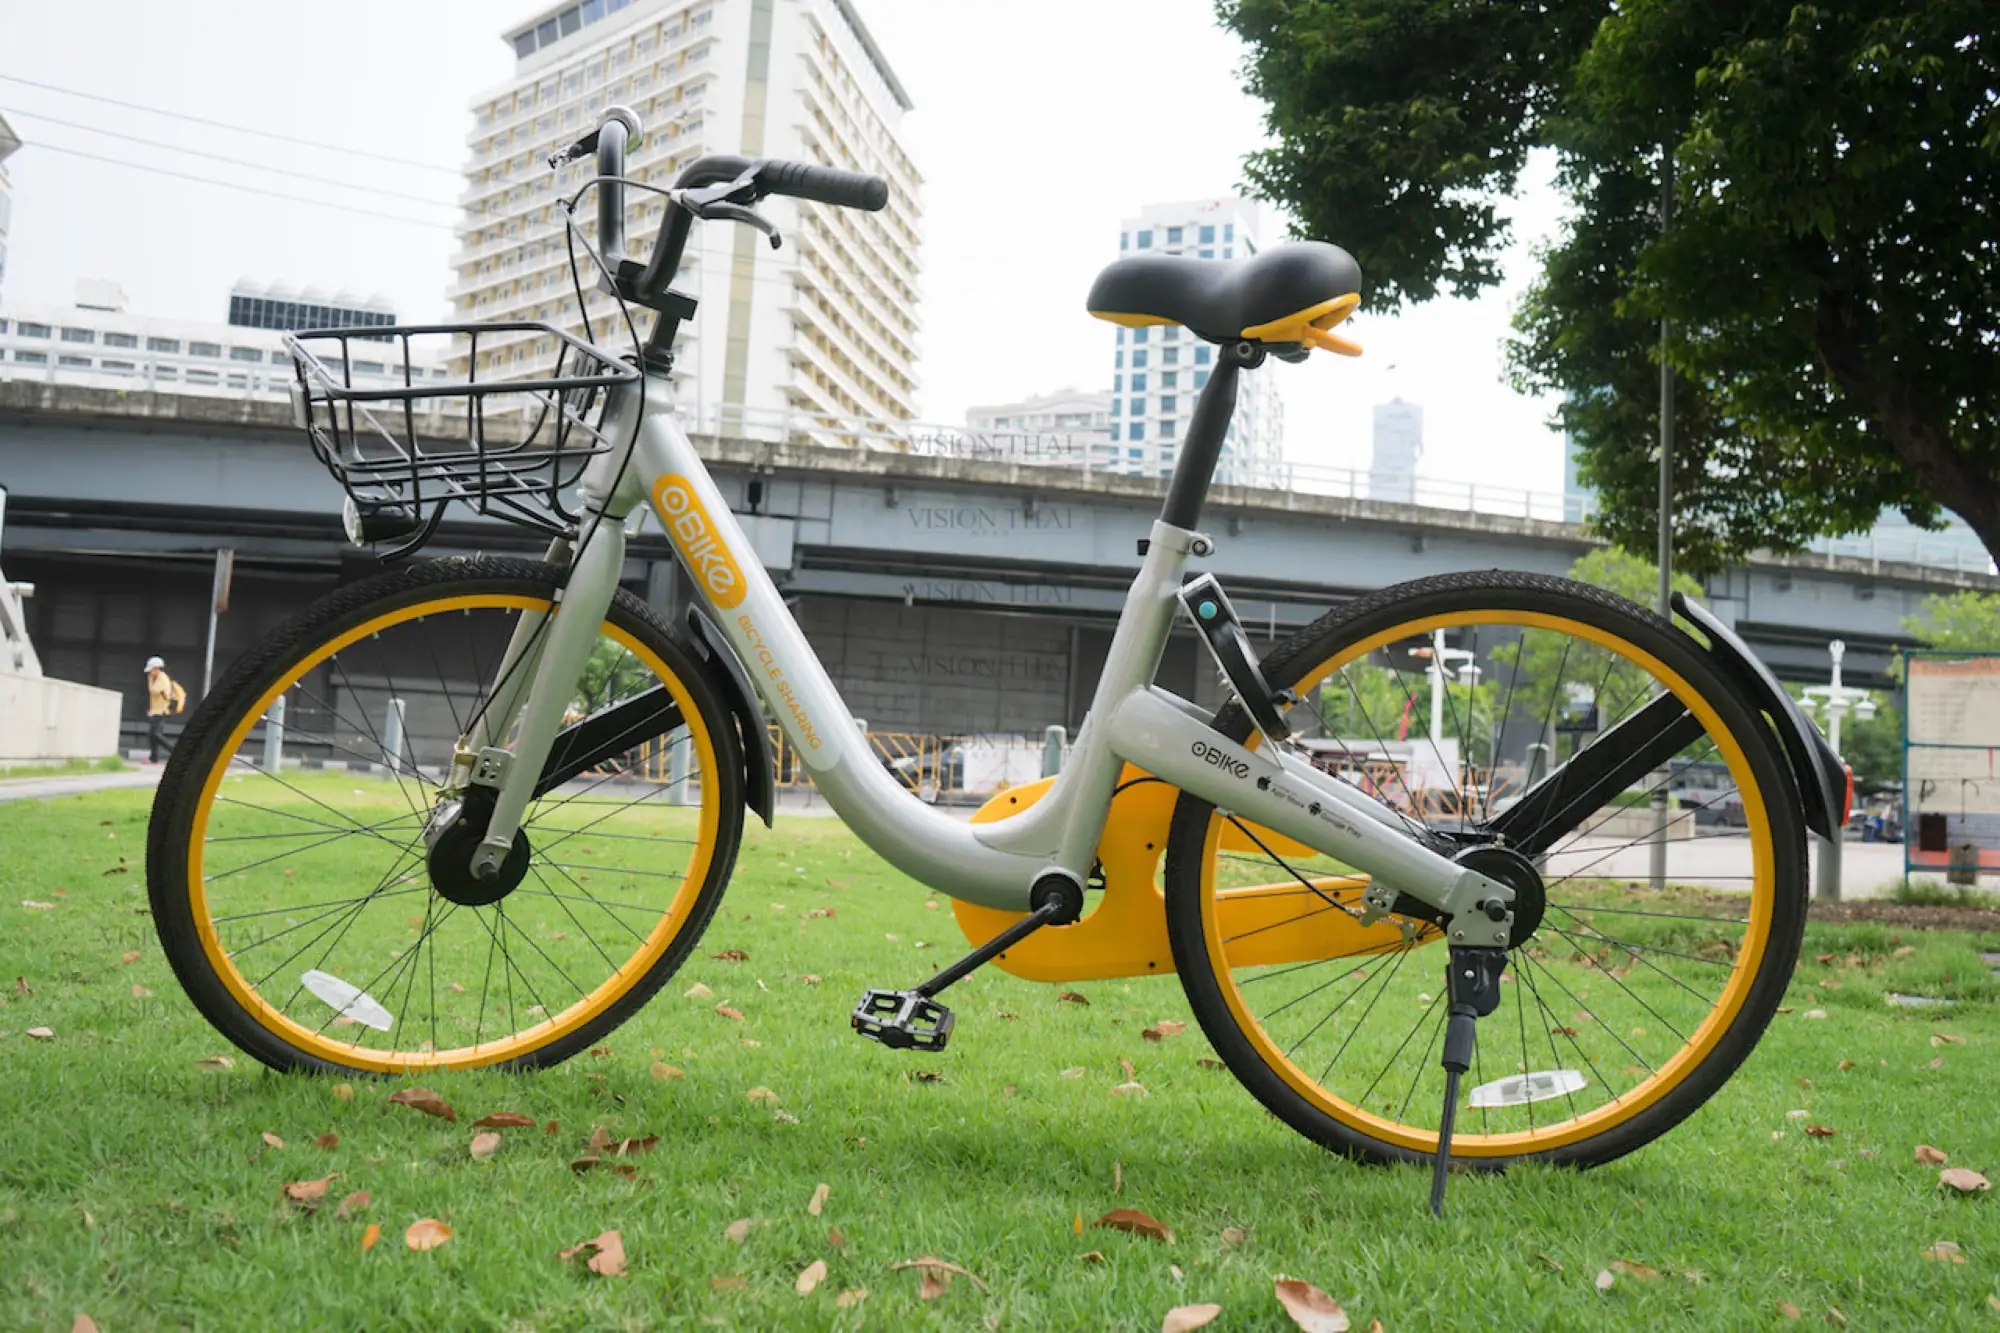 曼谷騎自行車 oBike無站式共享自行車系統進駐 搶攻市佔率